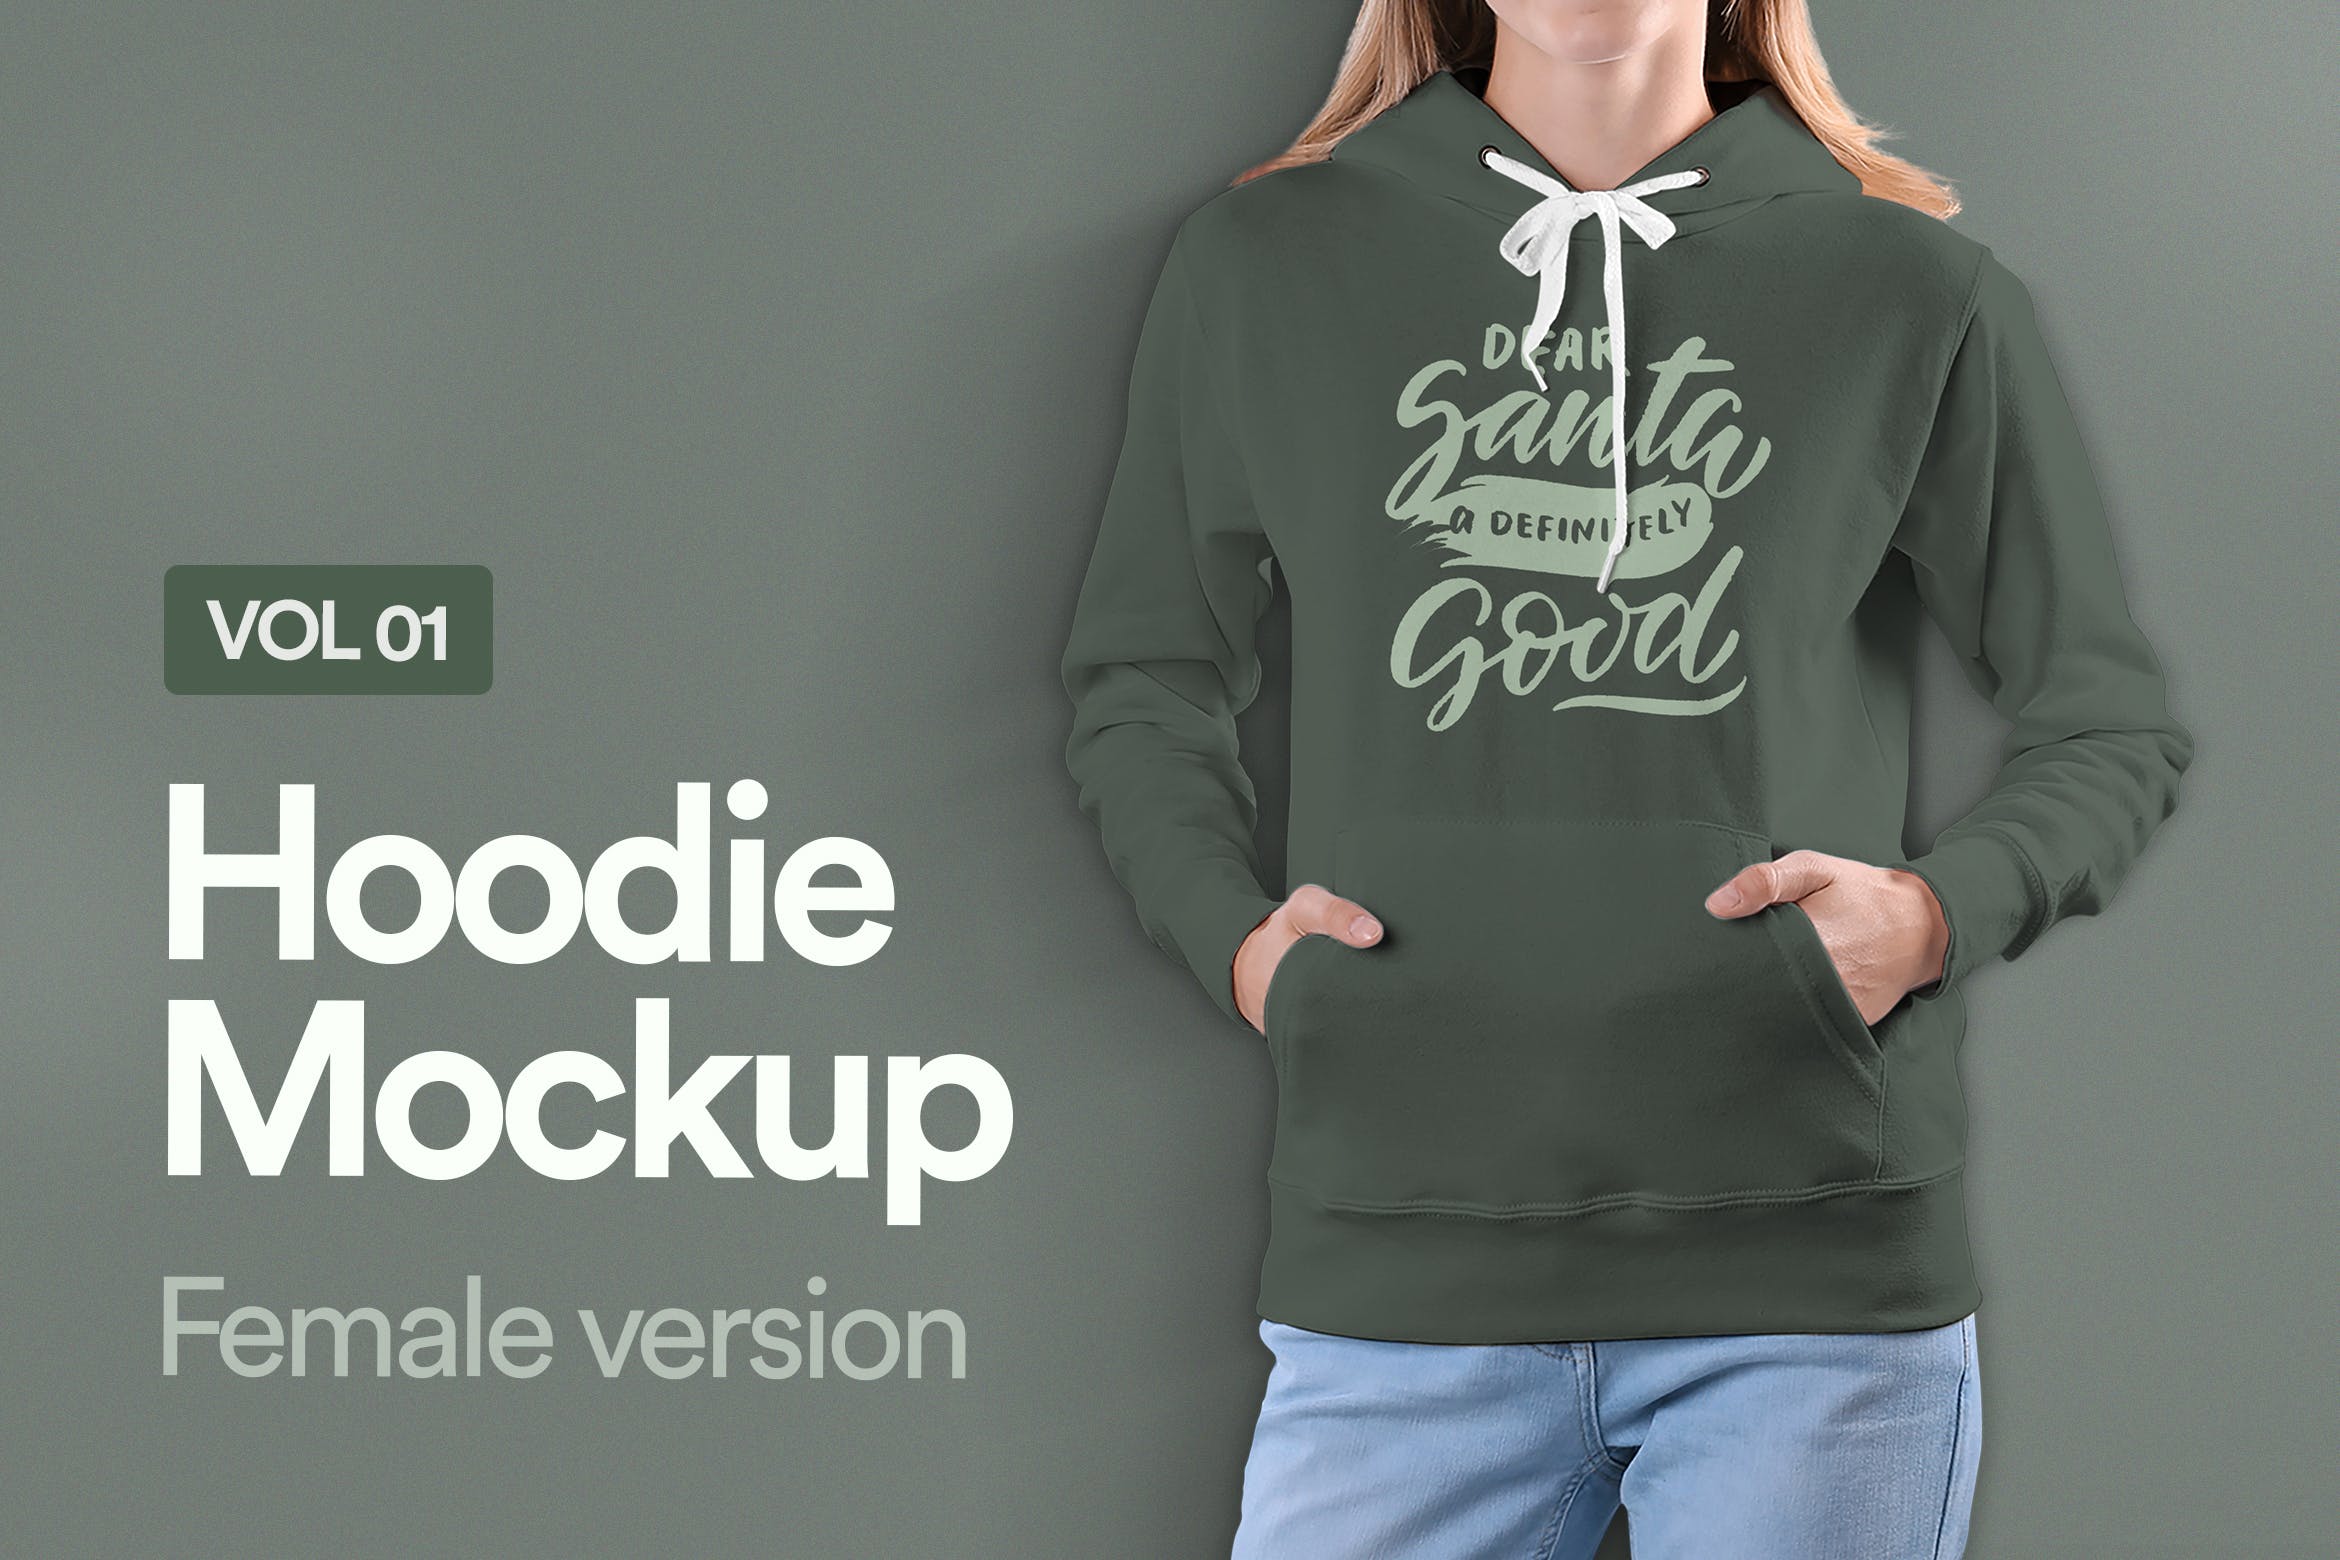 女士连帽卫衣设计预览样机16设计网精选v01 Hoodie Mockup Vol 01插图